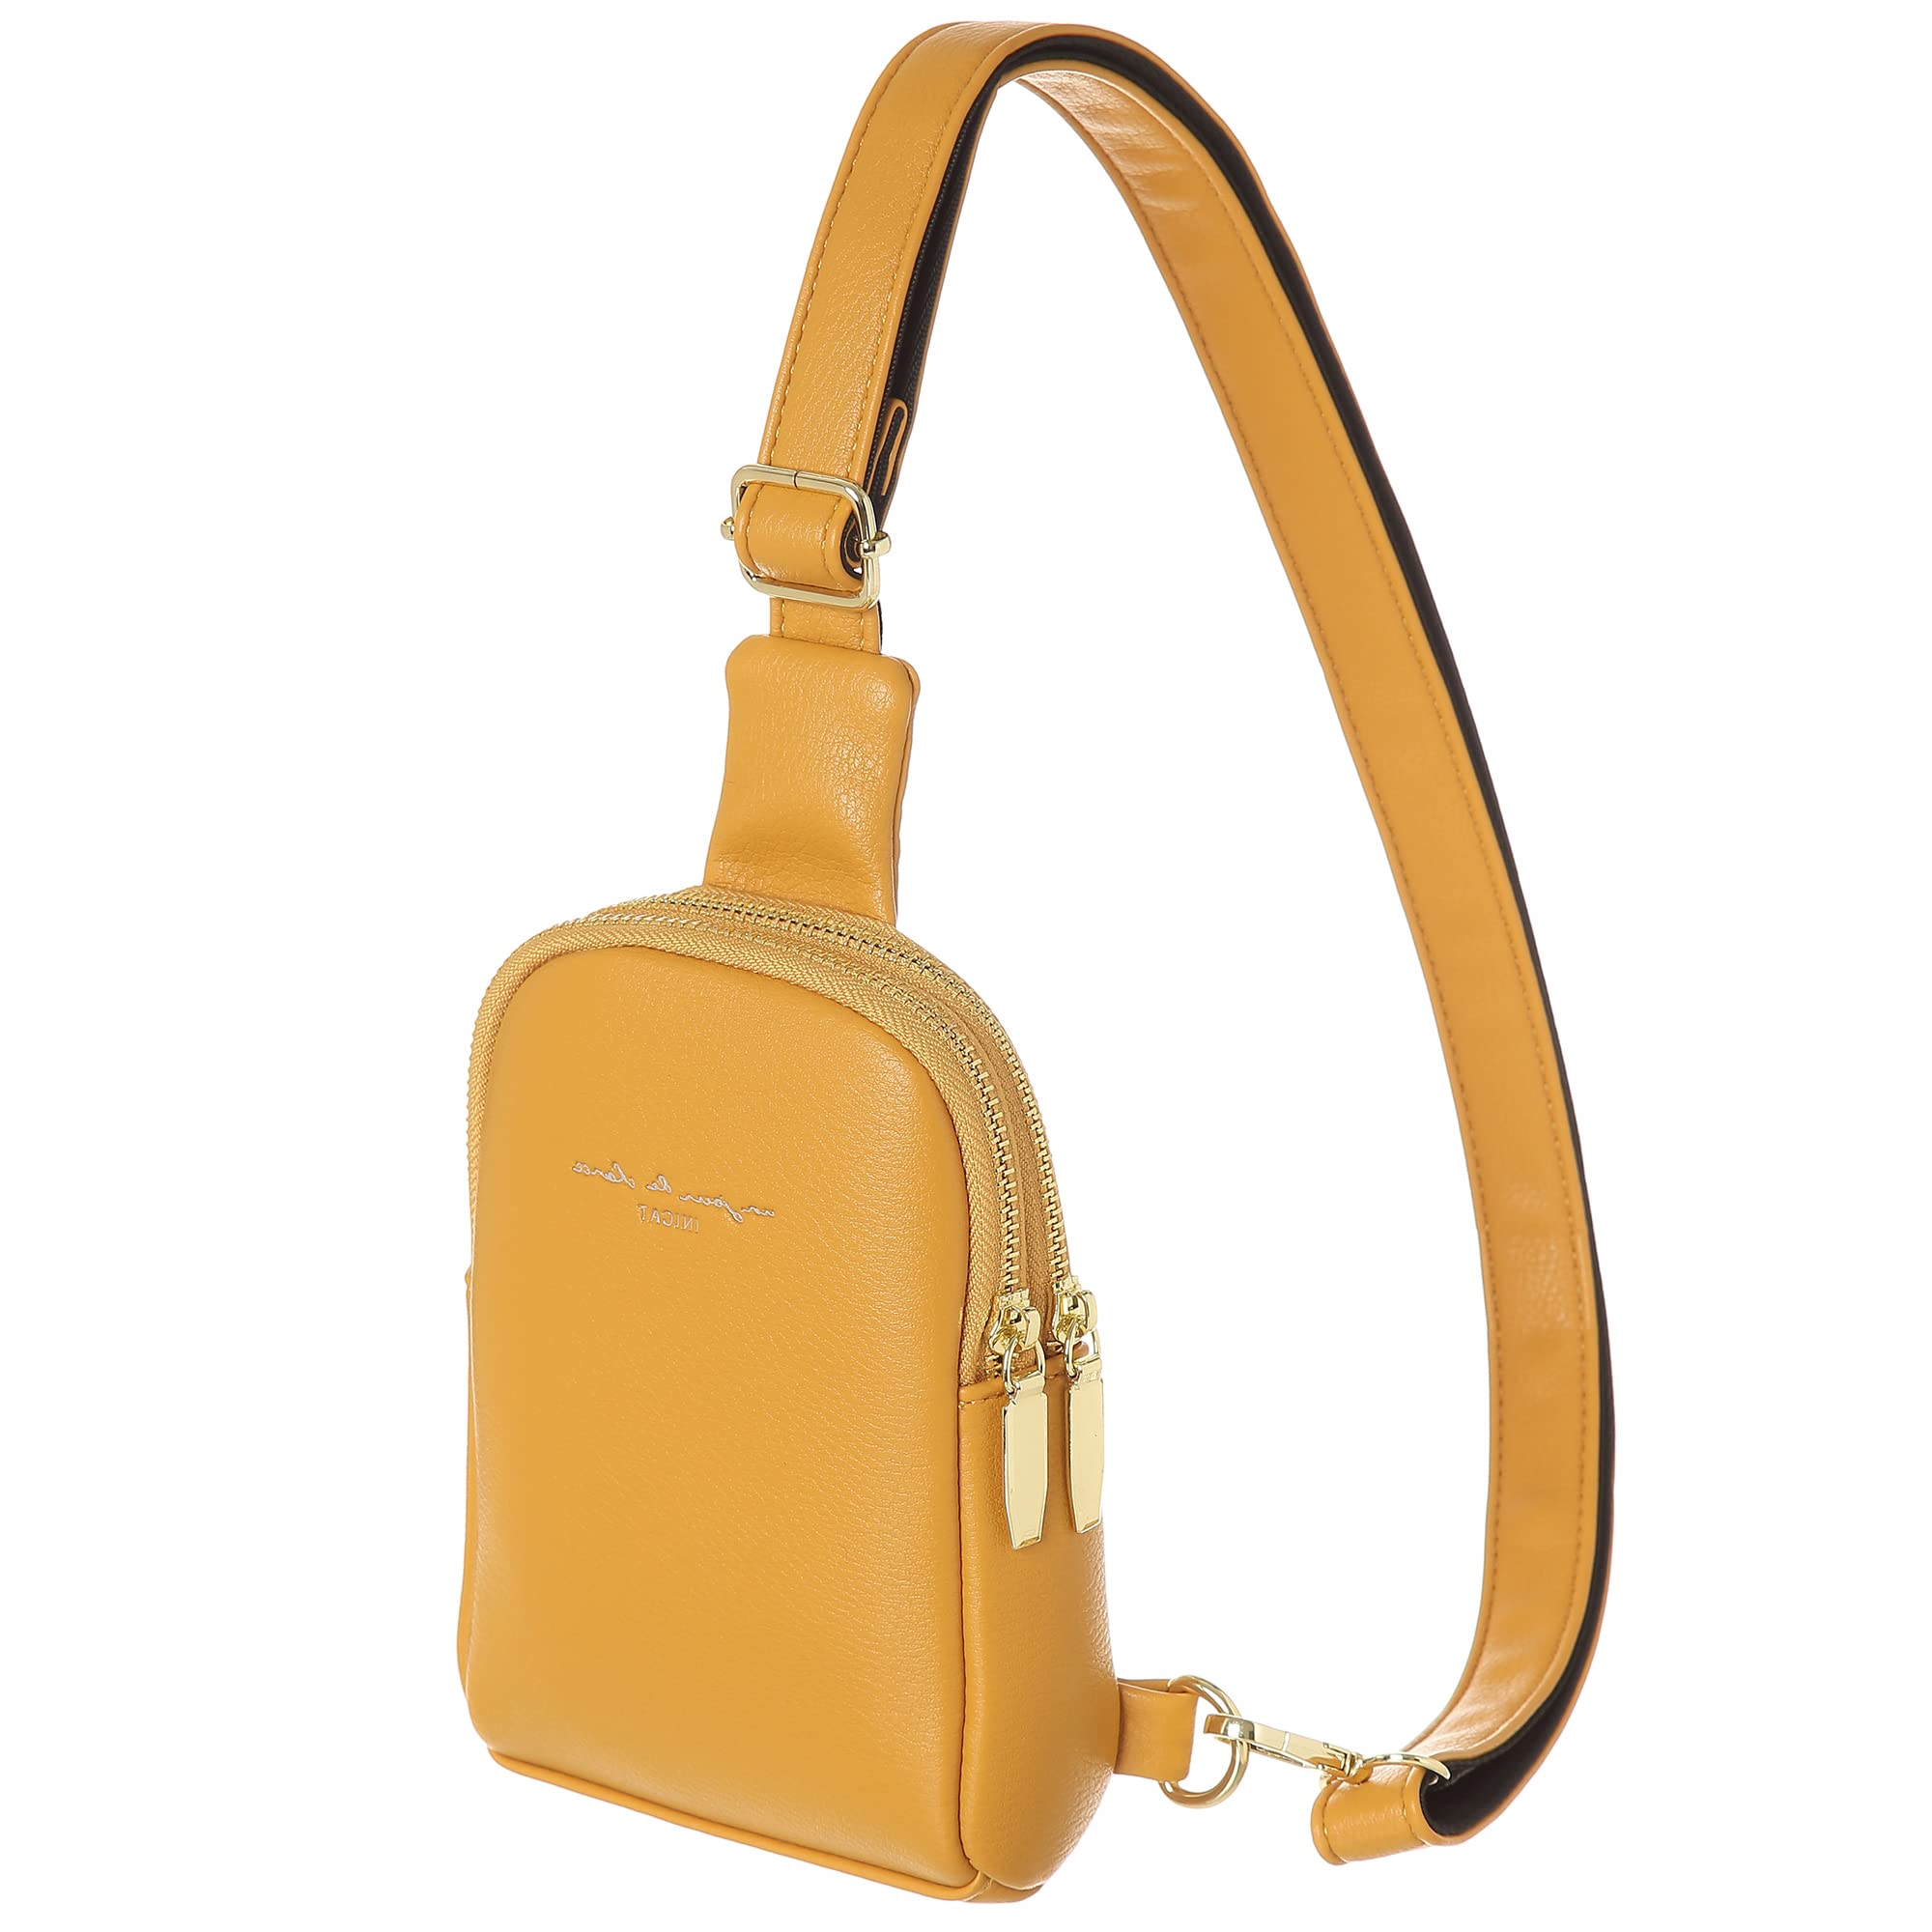 INICAT Small Sling Bag Crossbody Vegan Leather Fanny Packs for Women Women Fashionable Chest Bag for Travel